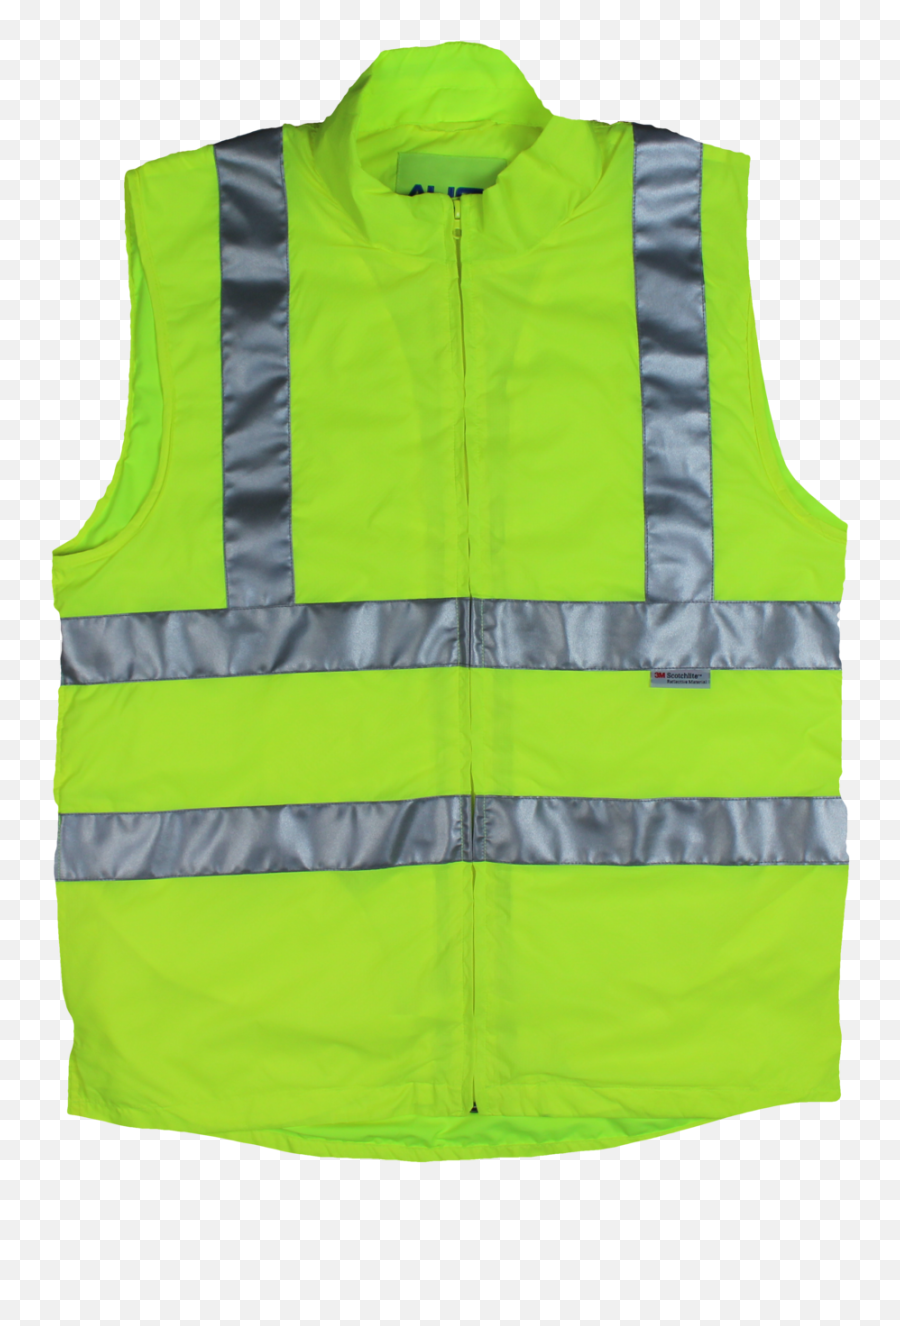 Safety Vest With Ipad Pocket - Hse Images U0026 Videos Gallery Safety Vest With Ipad Pocket Png,Icon Orange Vest